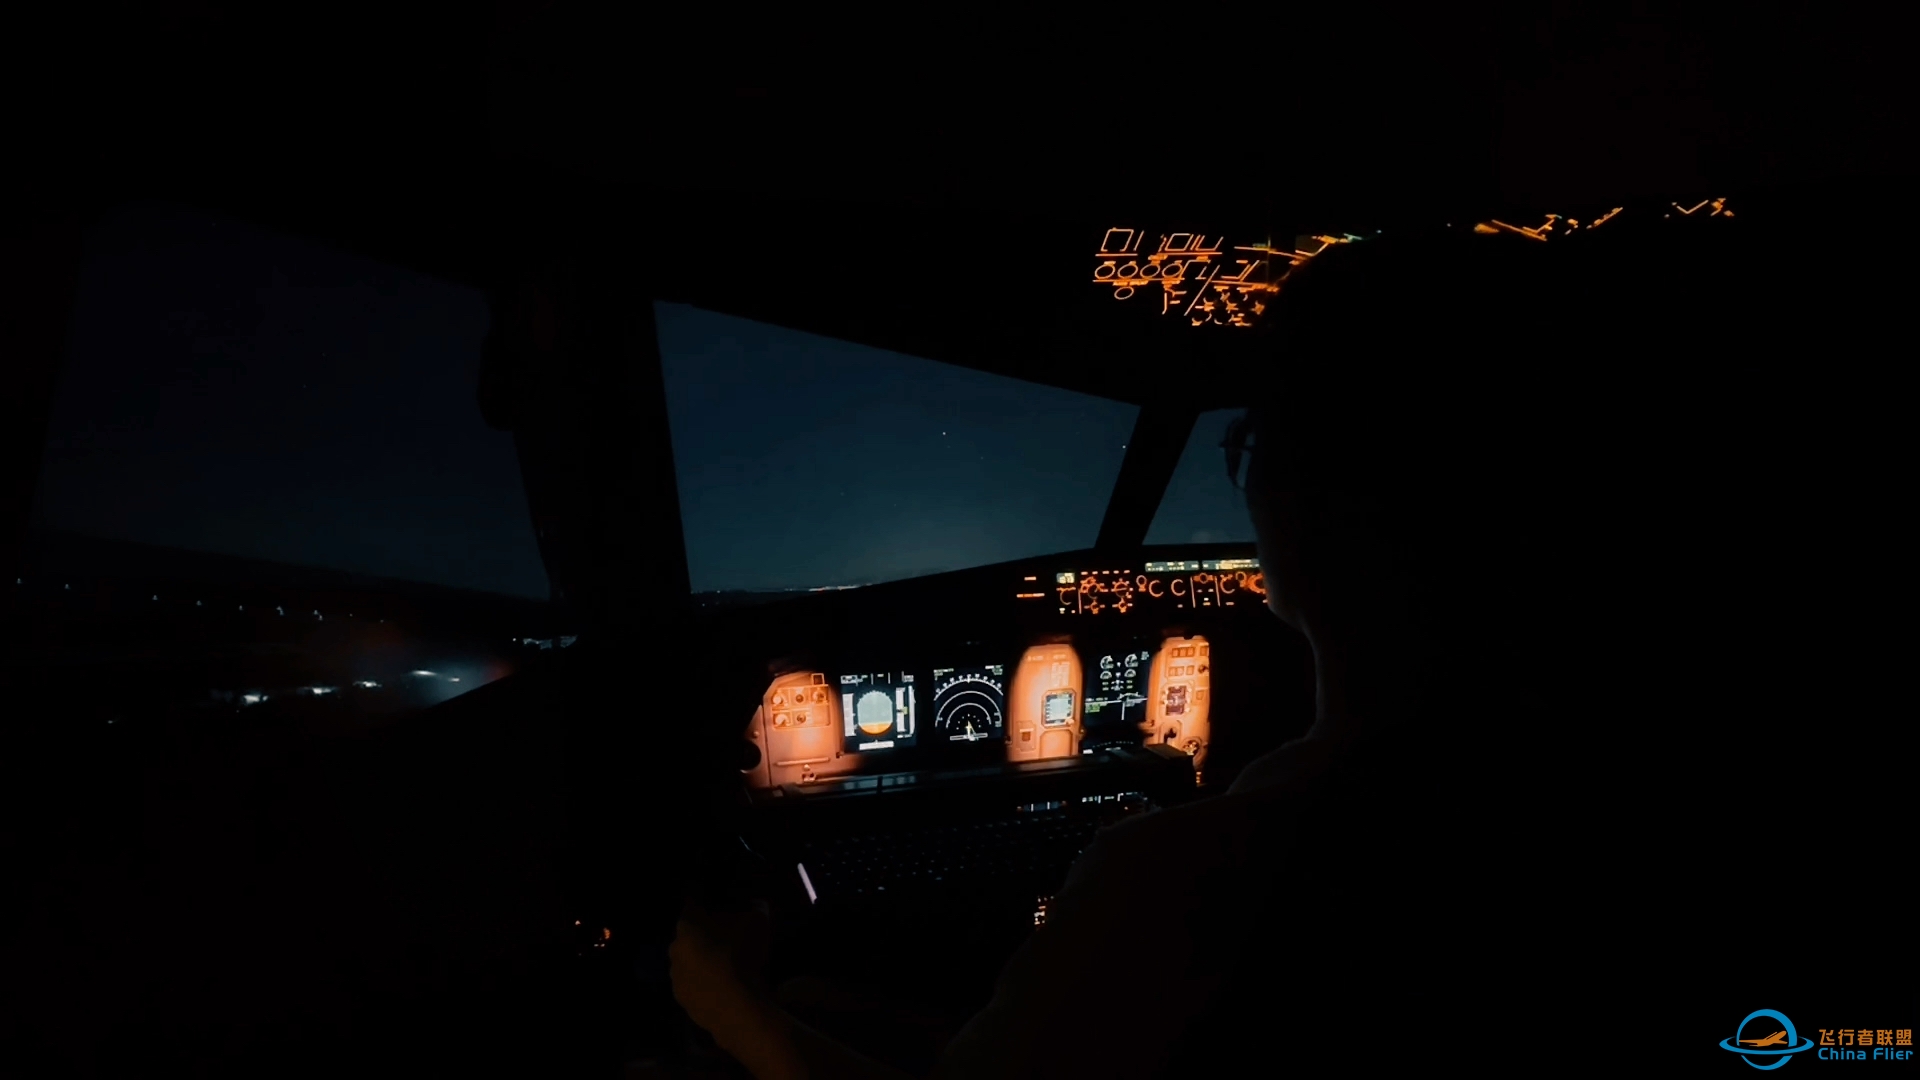 多屏飞行模拟器 X 微软飞行模拟 模拟飞行 2020-5302 